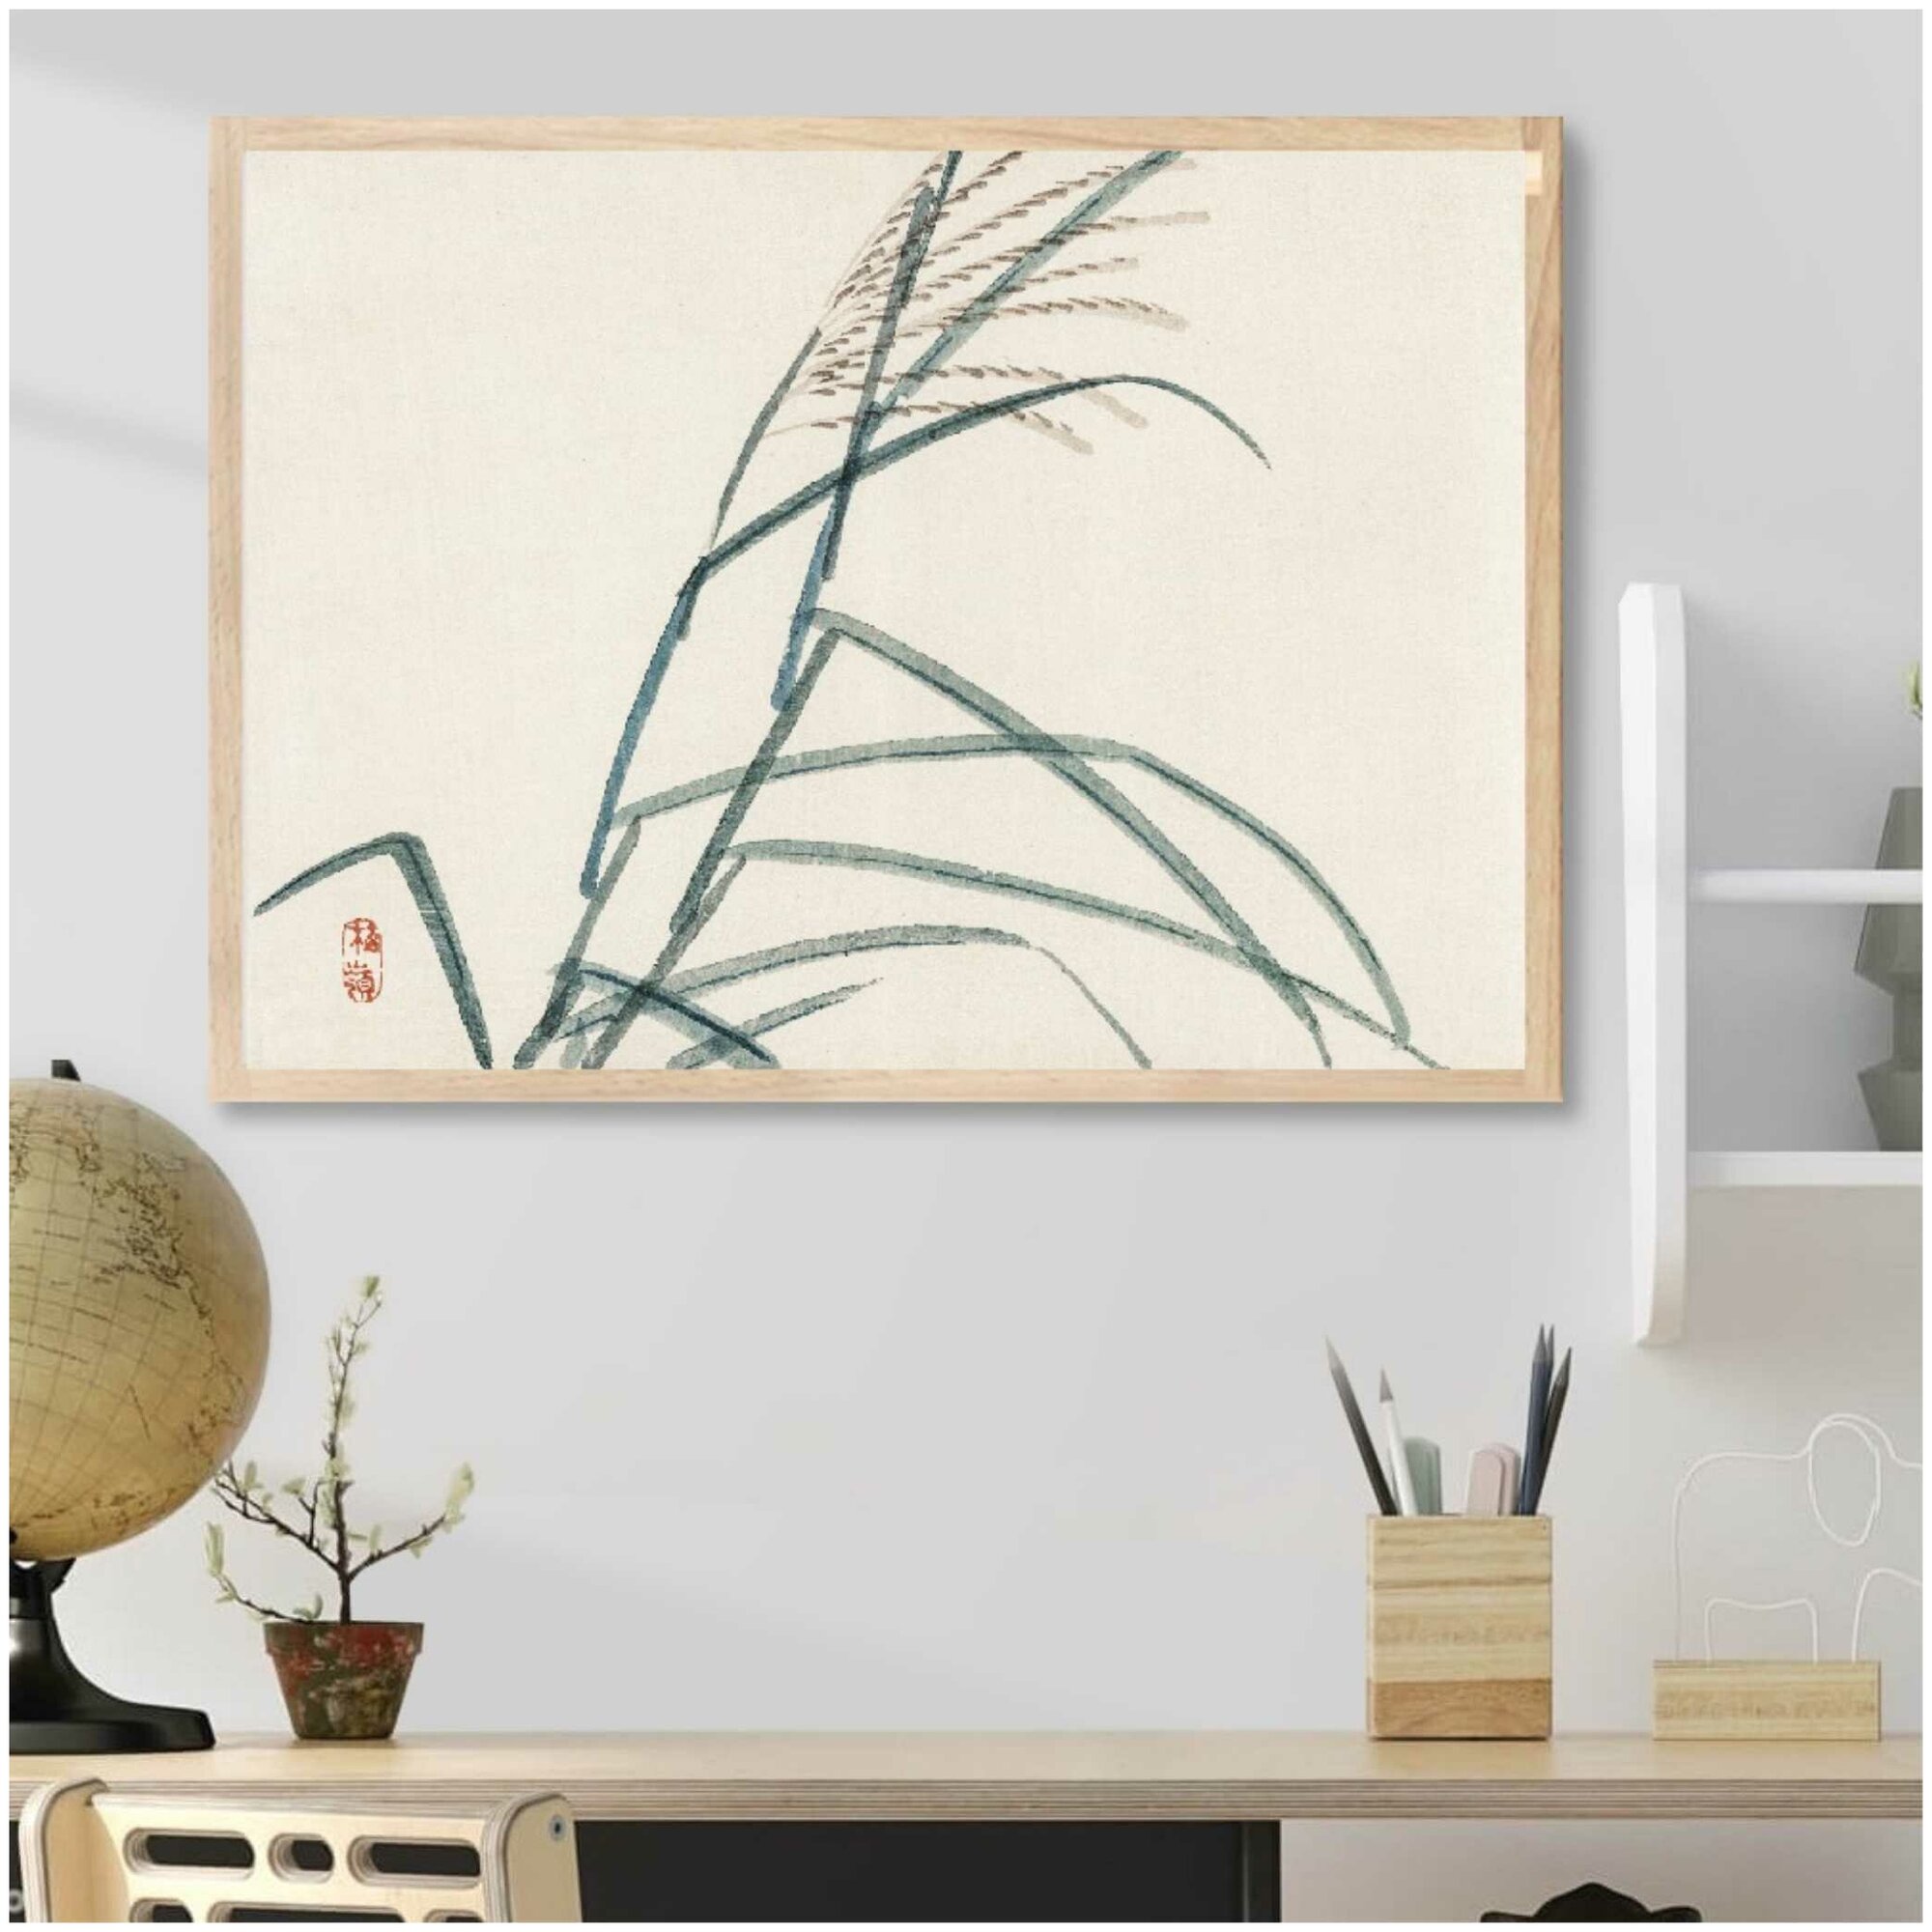 Постер без рамки "Бамбук в японском стиле репродукция" 30 на 40 в тубусе / Картина для интерьера / Плакат / Постер на стену / Интерьерные картины